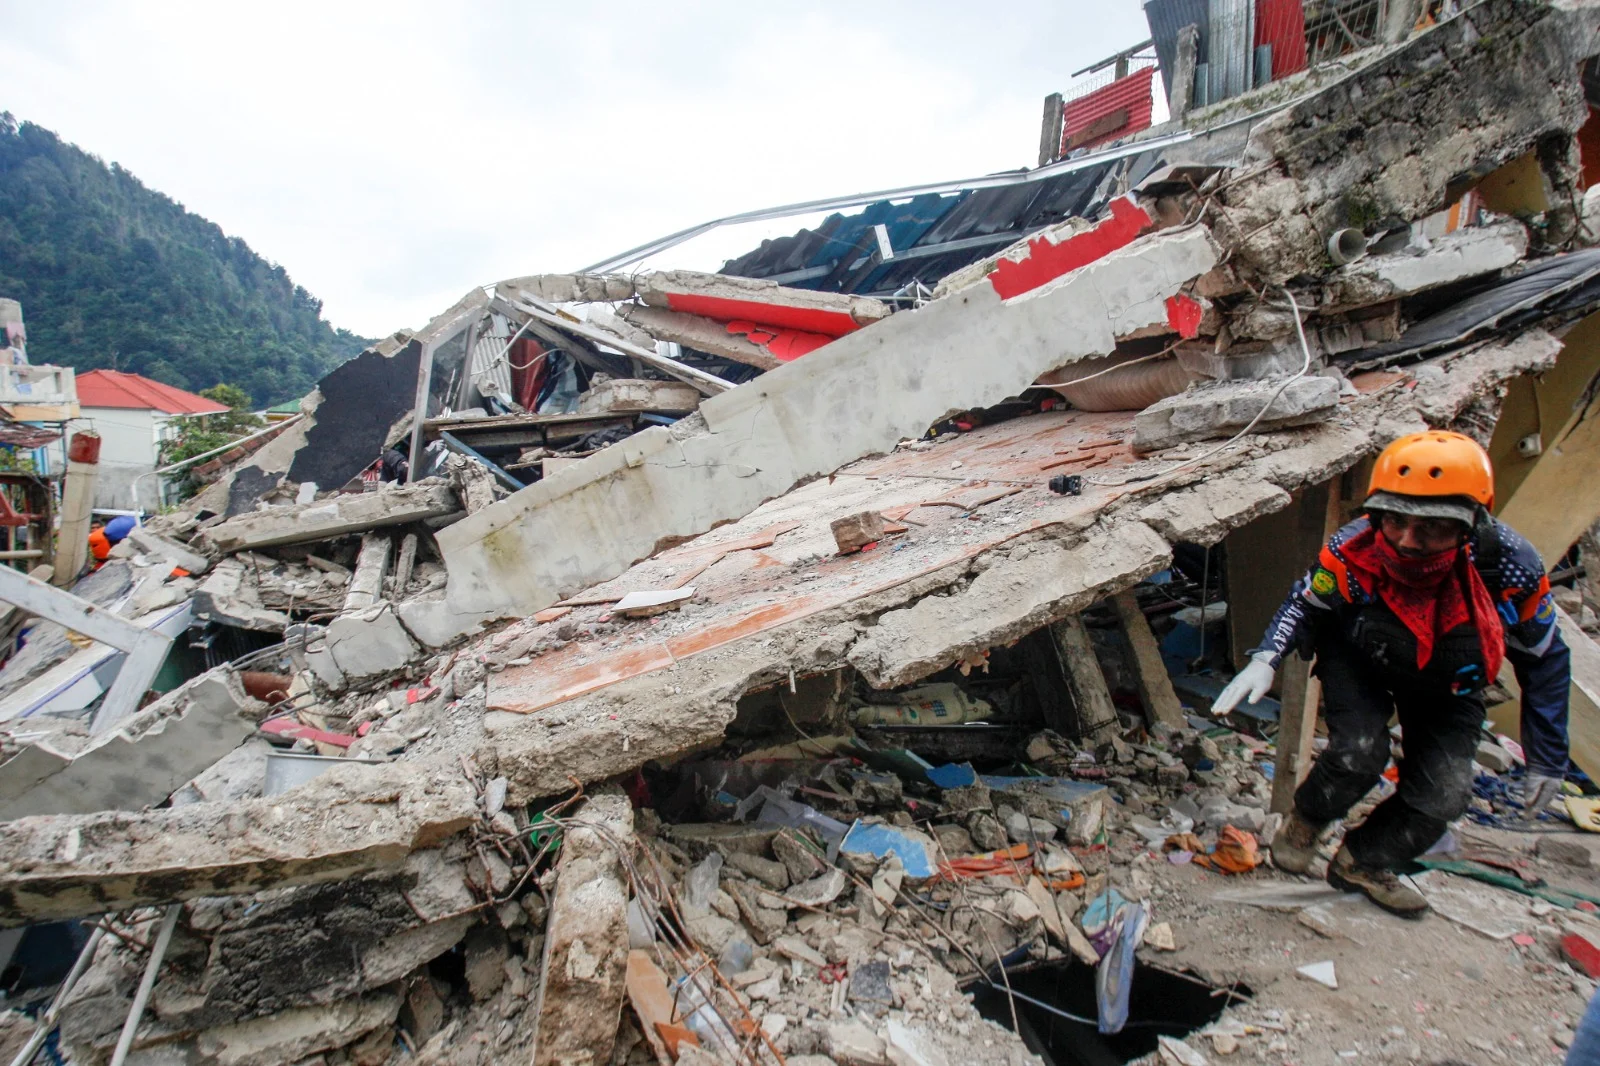 כ-30 איש עדיין נעדרים ברעידת האדמה באינדונזיה